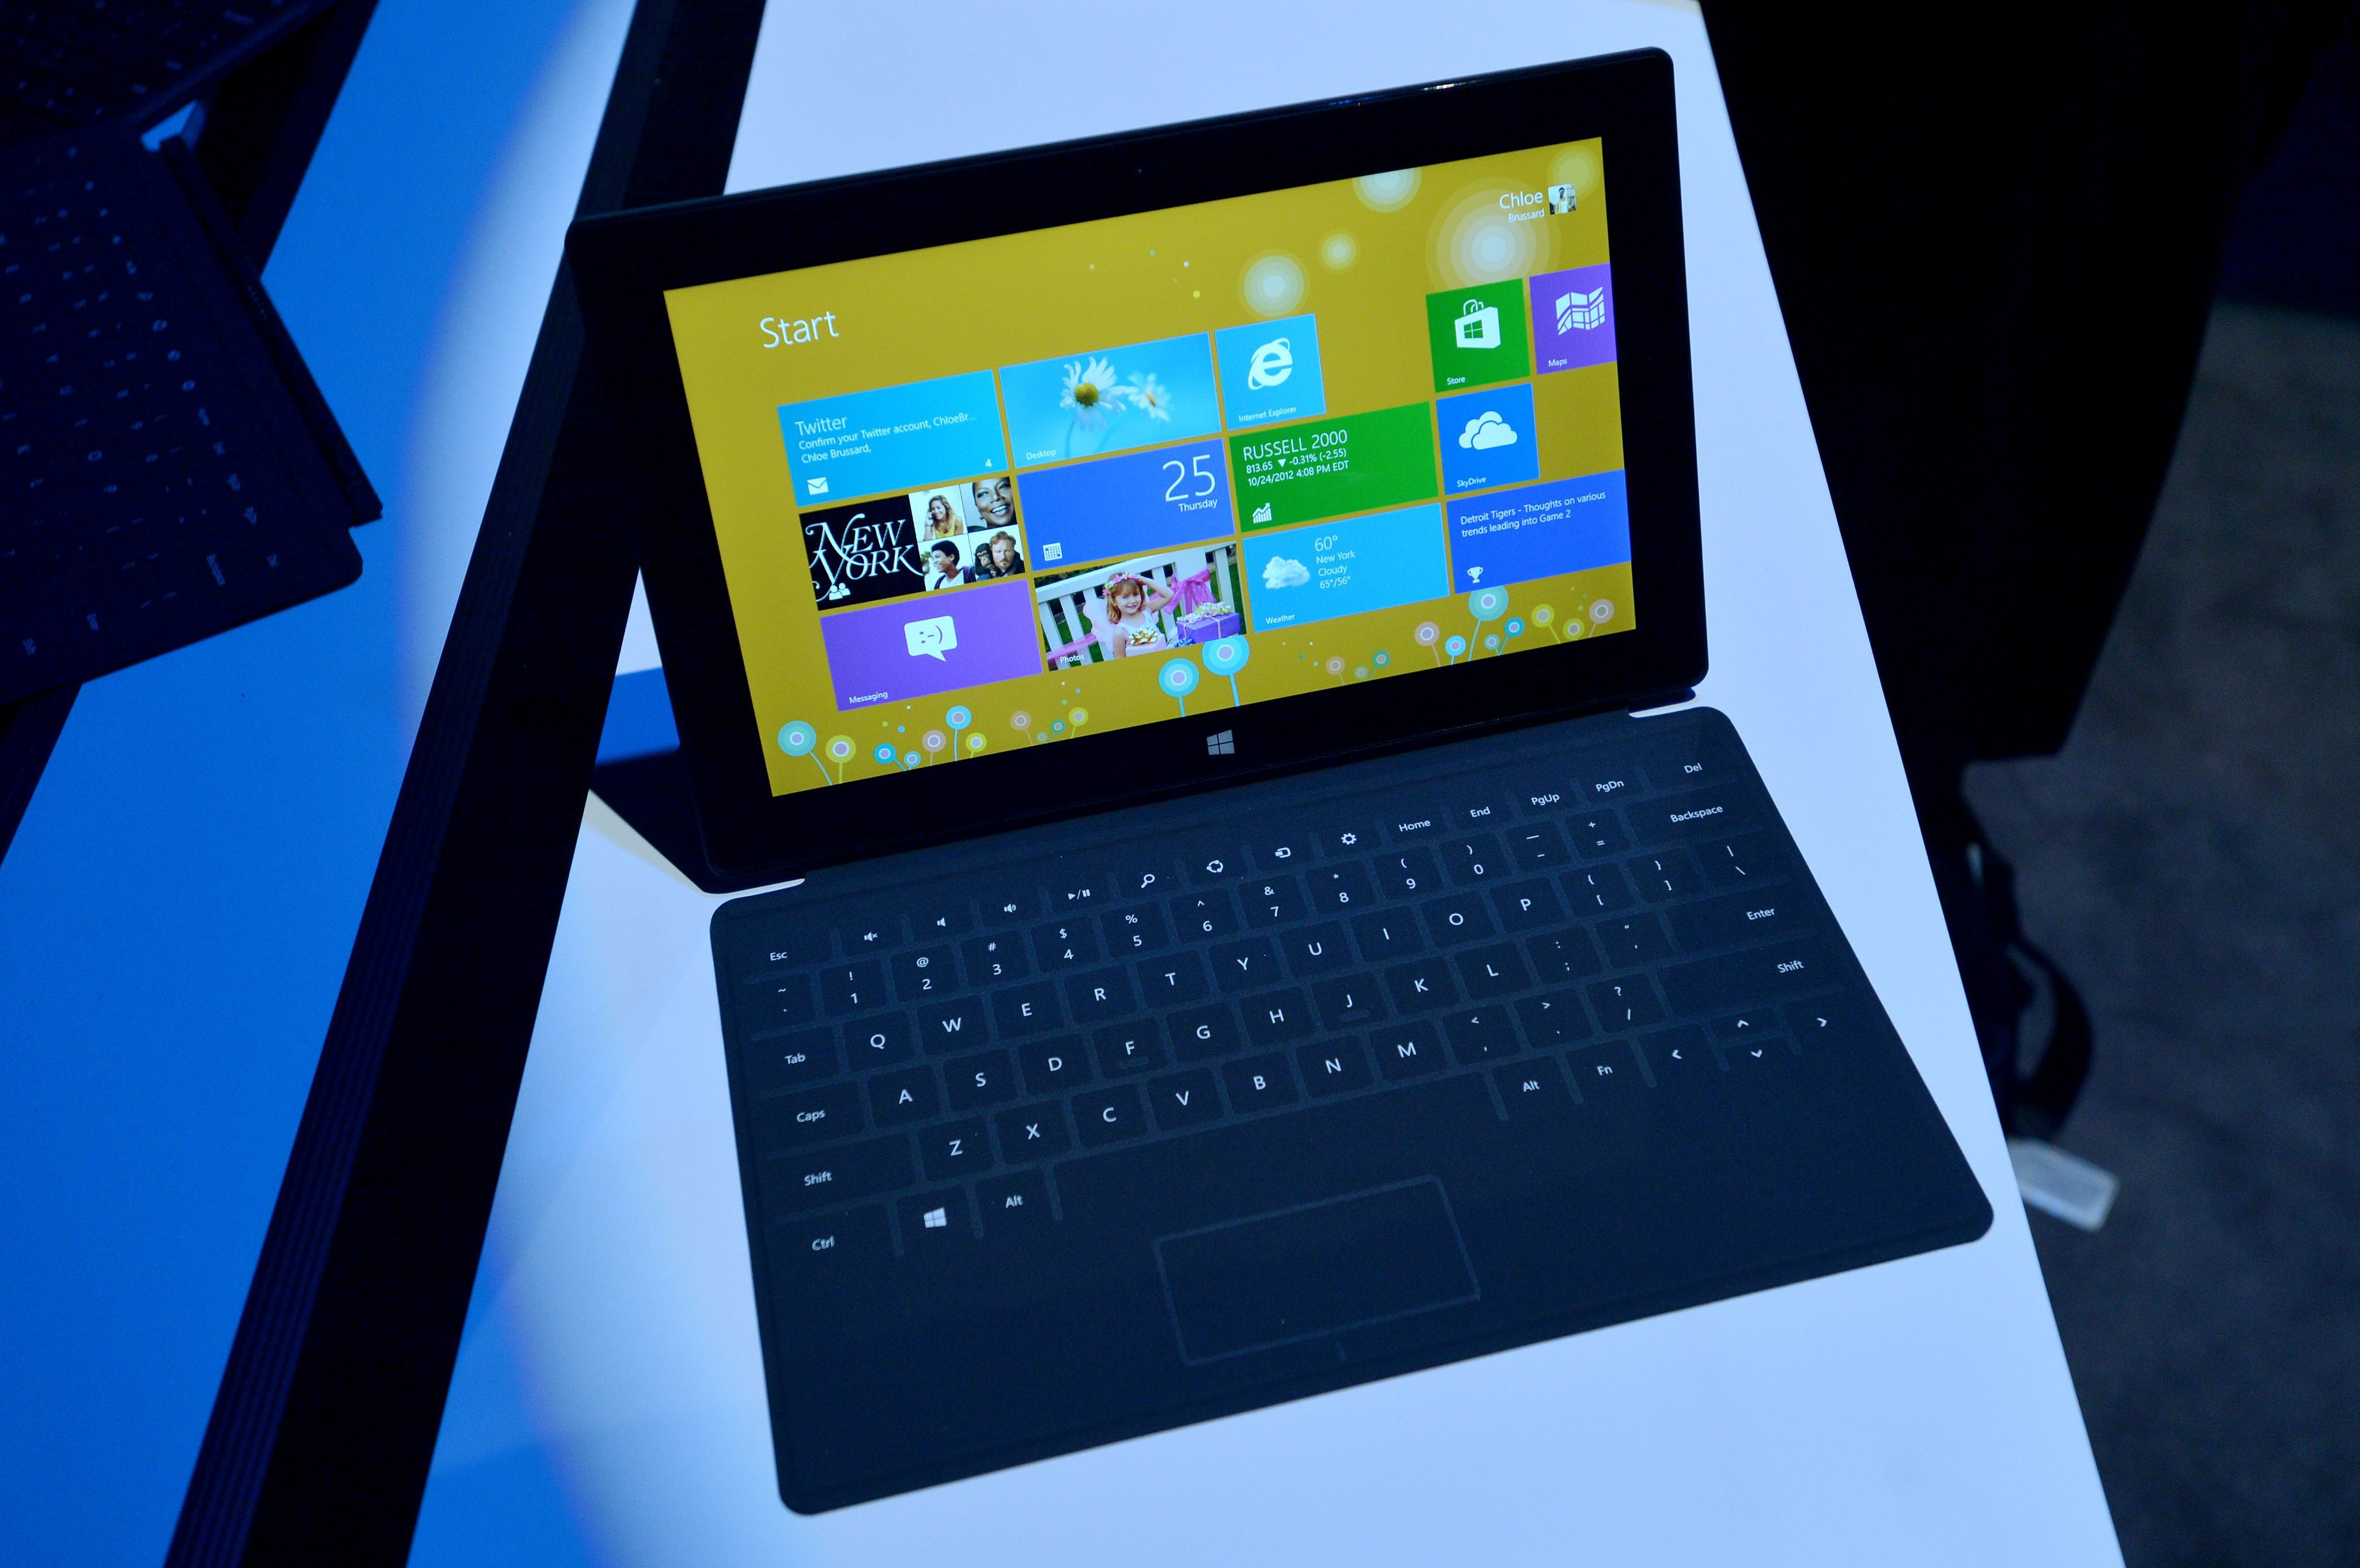 Очаква се Microsoft да представи новия Surface през април (сн. архив)